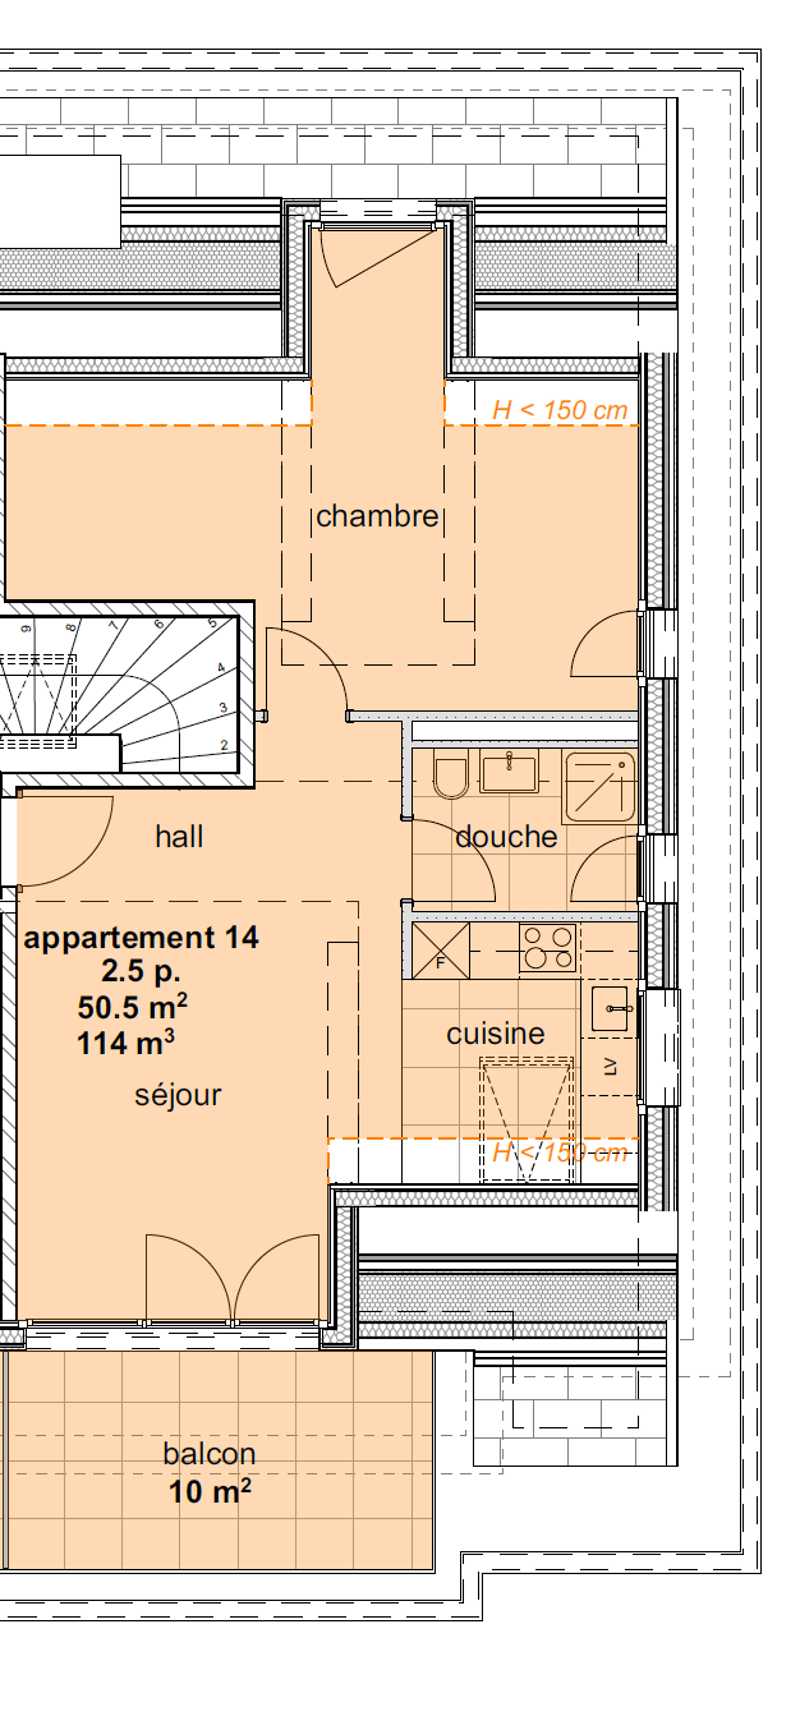 Appartements neufs de 3.5 pièces aux combles (3ème étage) - (Sud) (2)